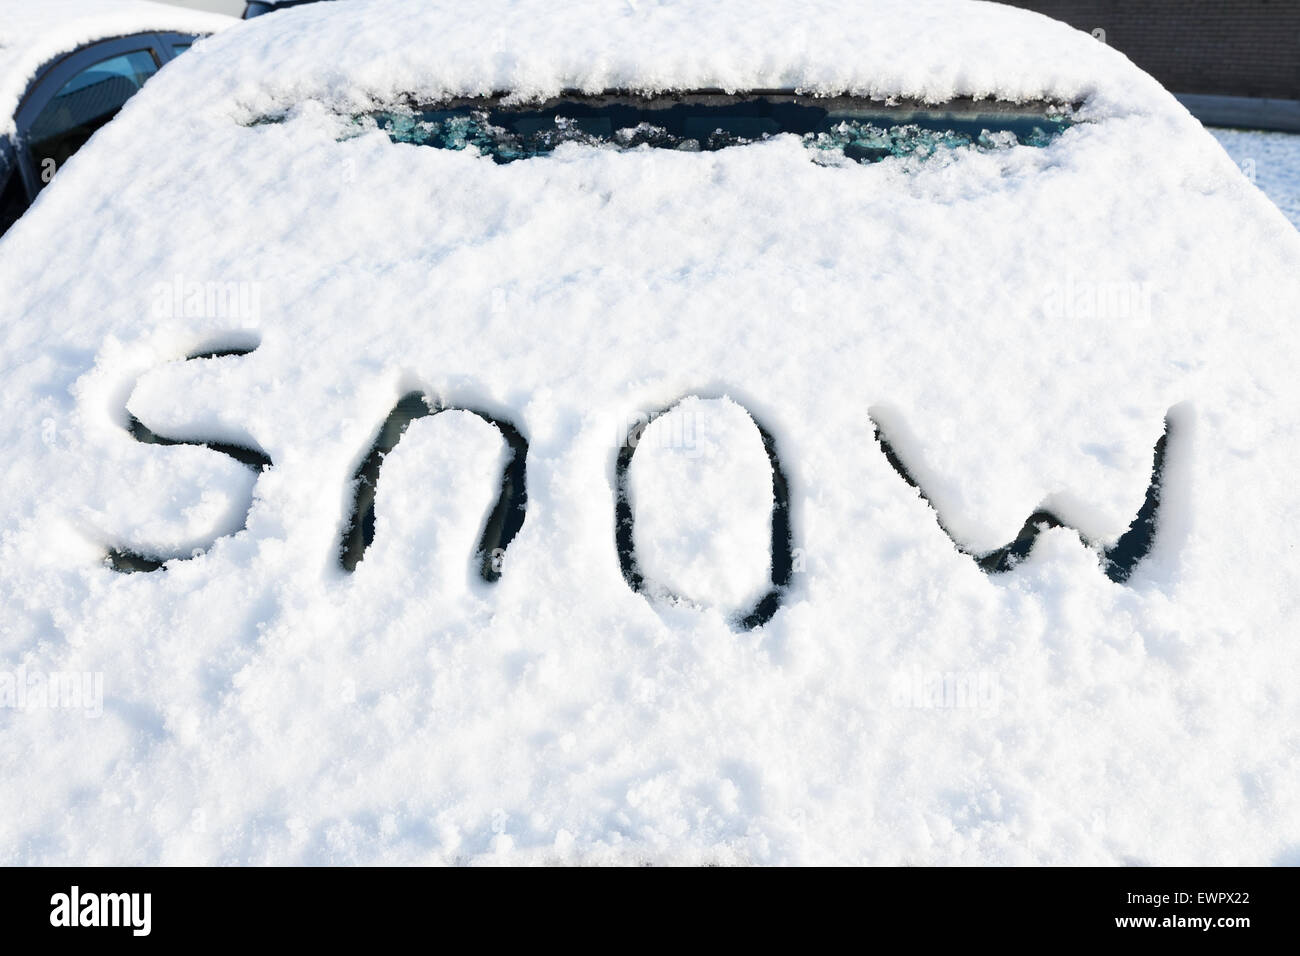 Wort Schnee auf der Windschutzscheibe des Autos im Wintersaison Stockfoto